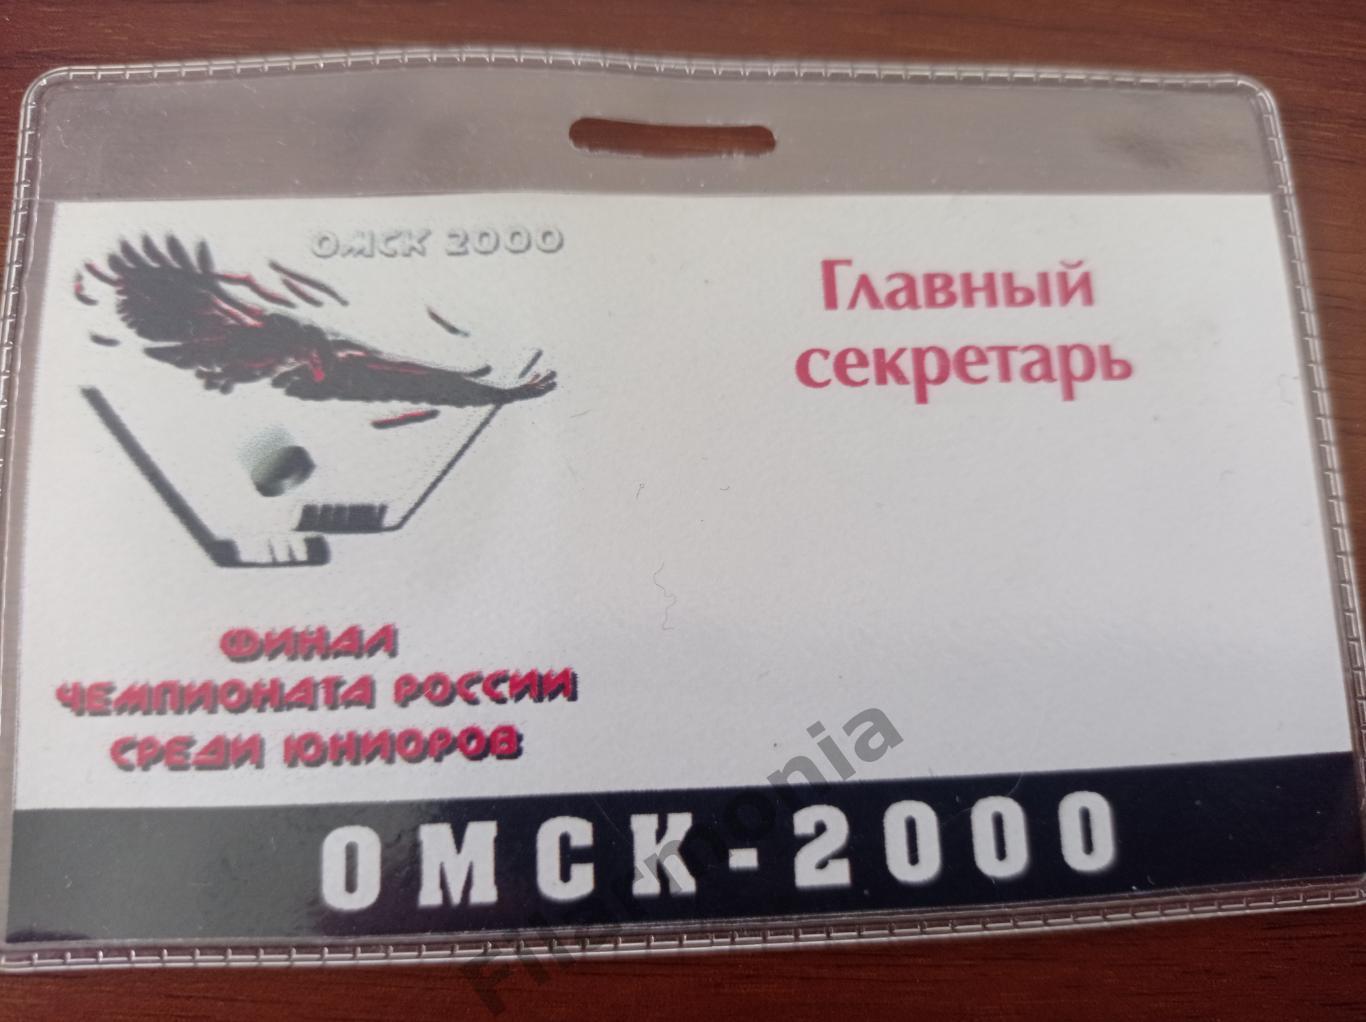 2000 Омск юниоры финал, главный секретарь, Ярославль, Казань, Челябинск и др.